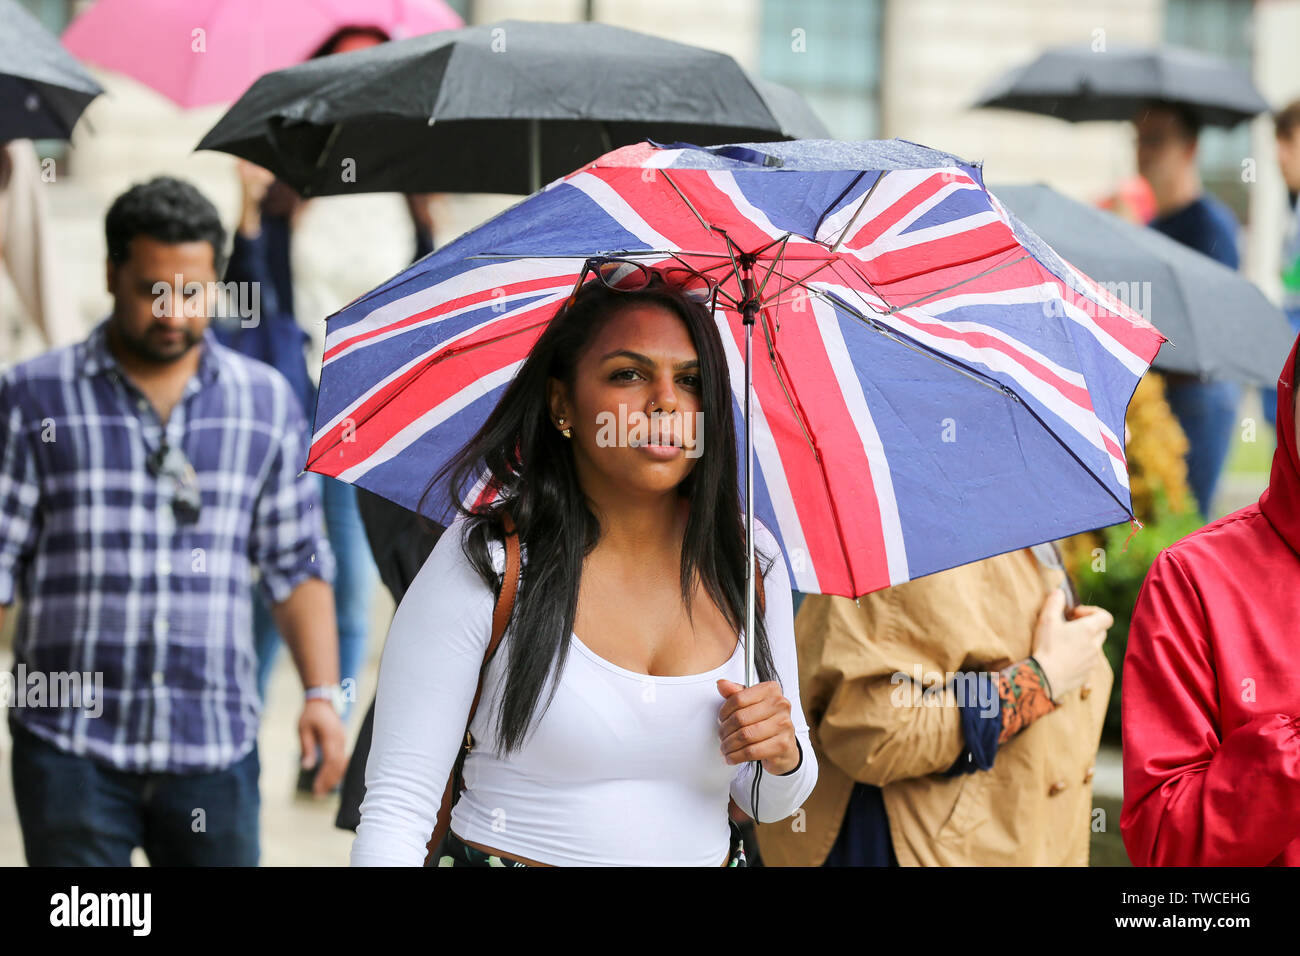 Les refuges d'une femme de la pluie sous un parapluie Union Jack au cours de l'averse lourde à Londres Banque D'Images